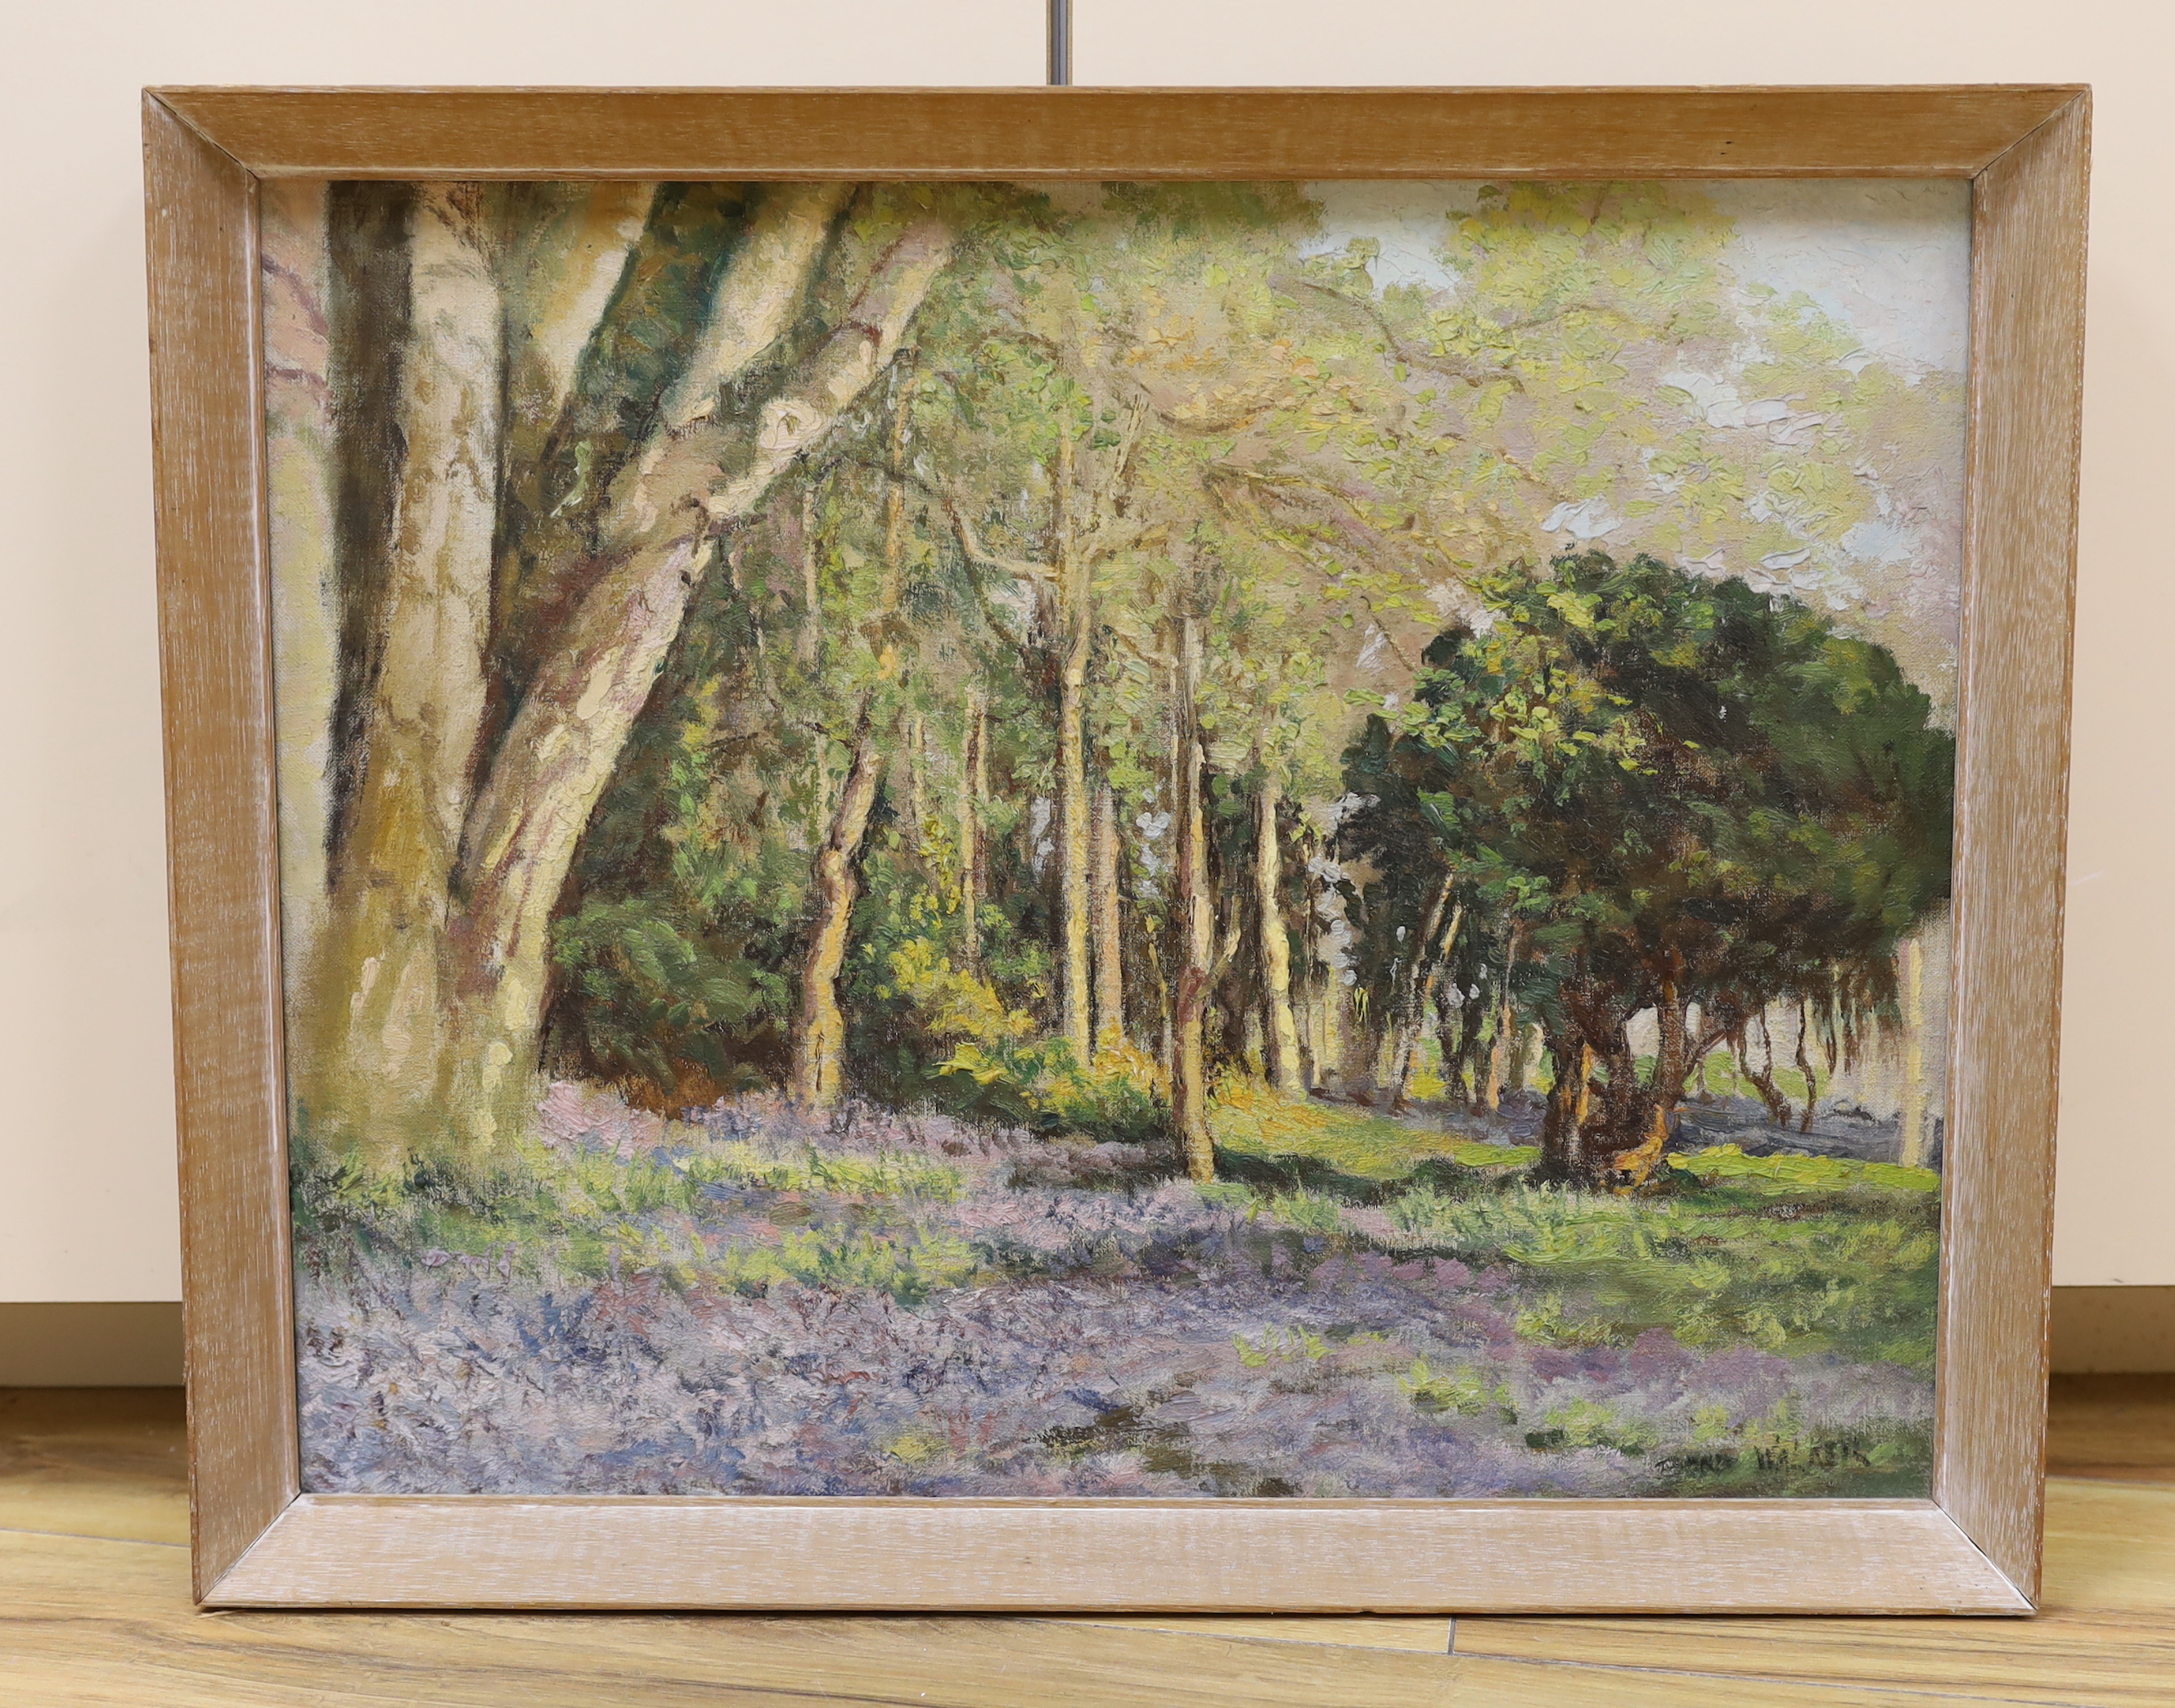 David Bond Walker (1891-1977), oil on canvas, Bluebell wooded landscape, signed, 39 x 50cm